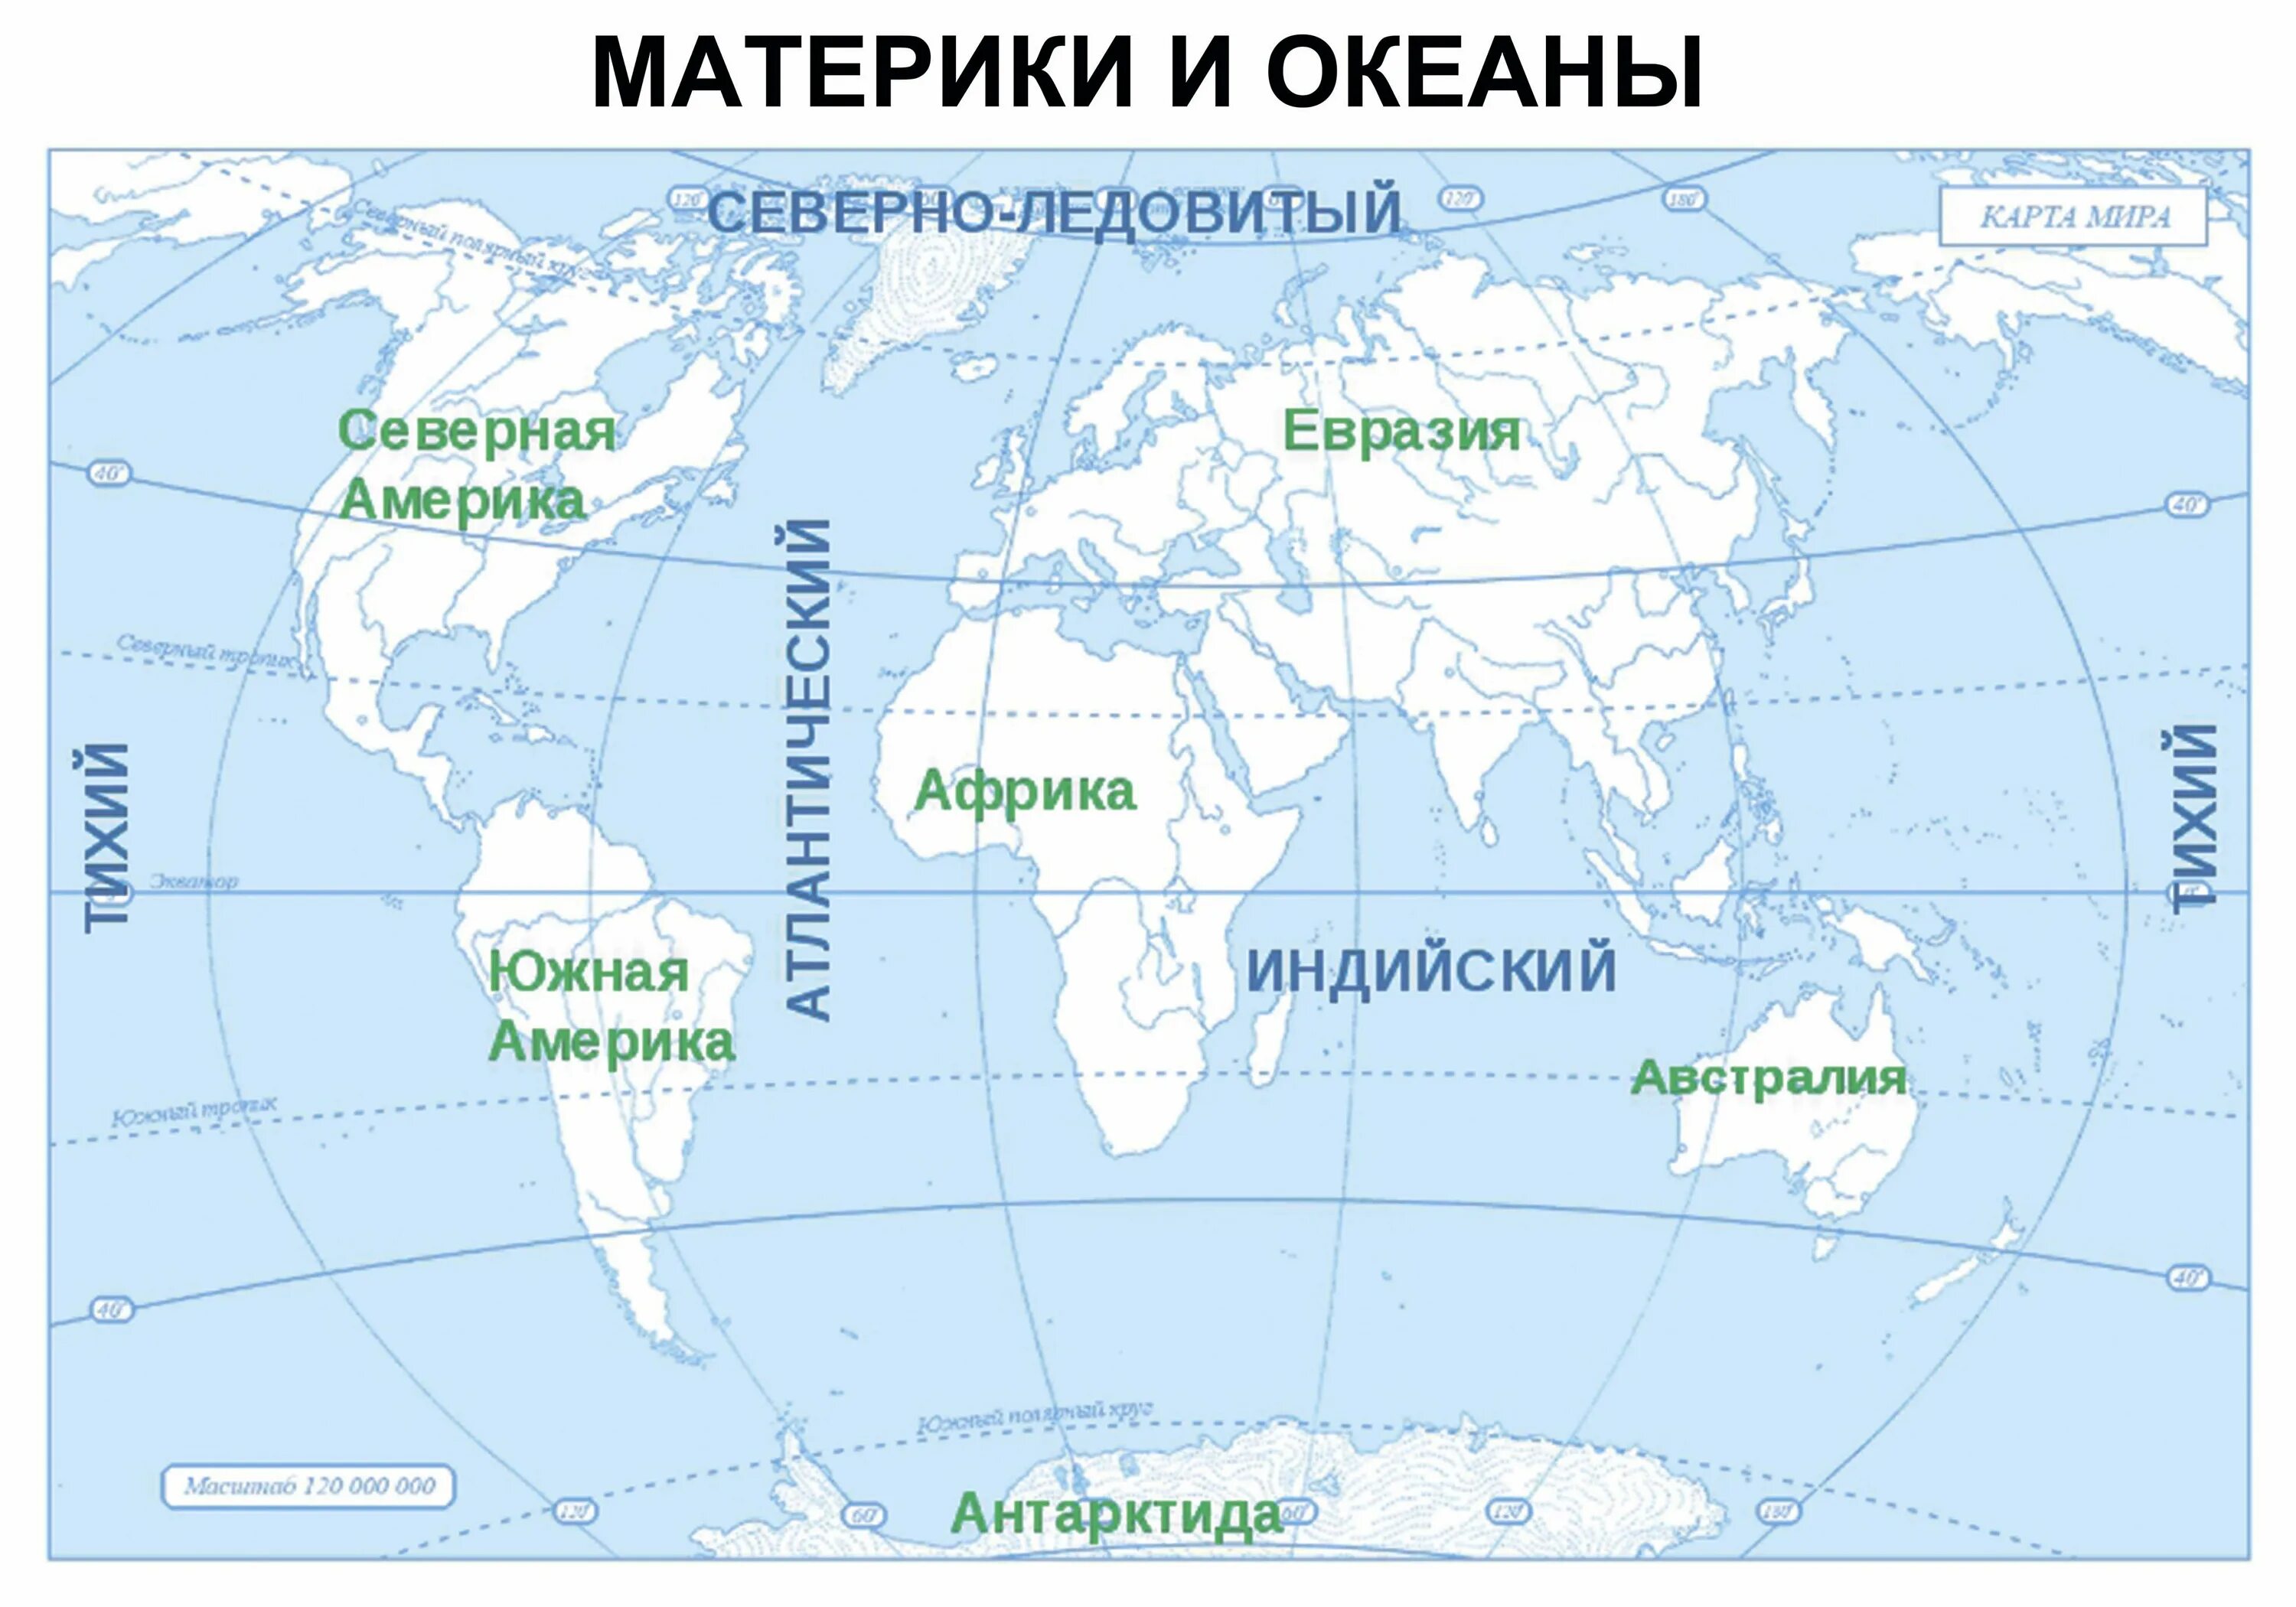 От евразии северная америка отделяется. Карта где подписаны материки и океаны. Подписать материки и океаны на контурной карте. Подписать материки на контурной карте 6 класс география.